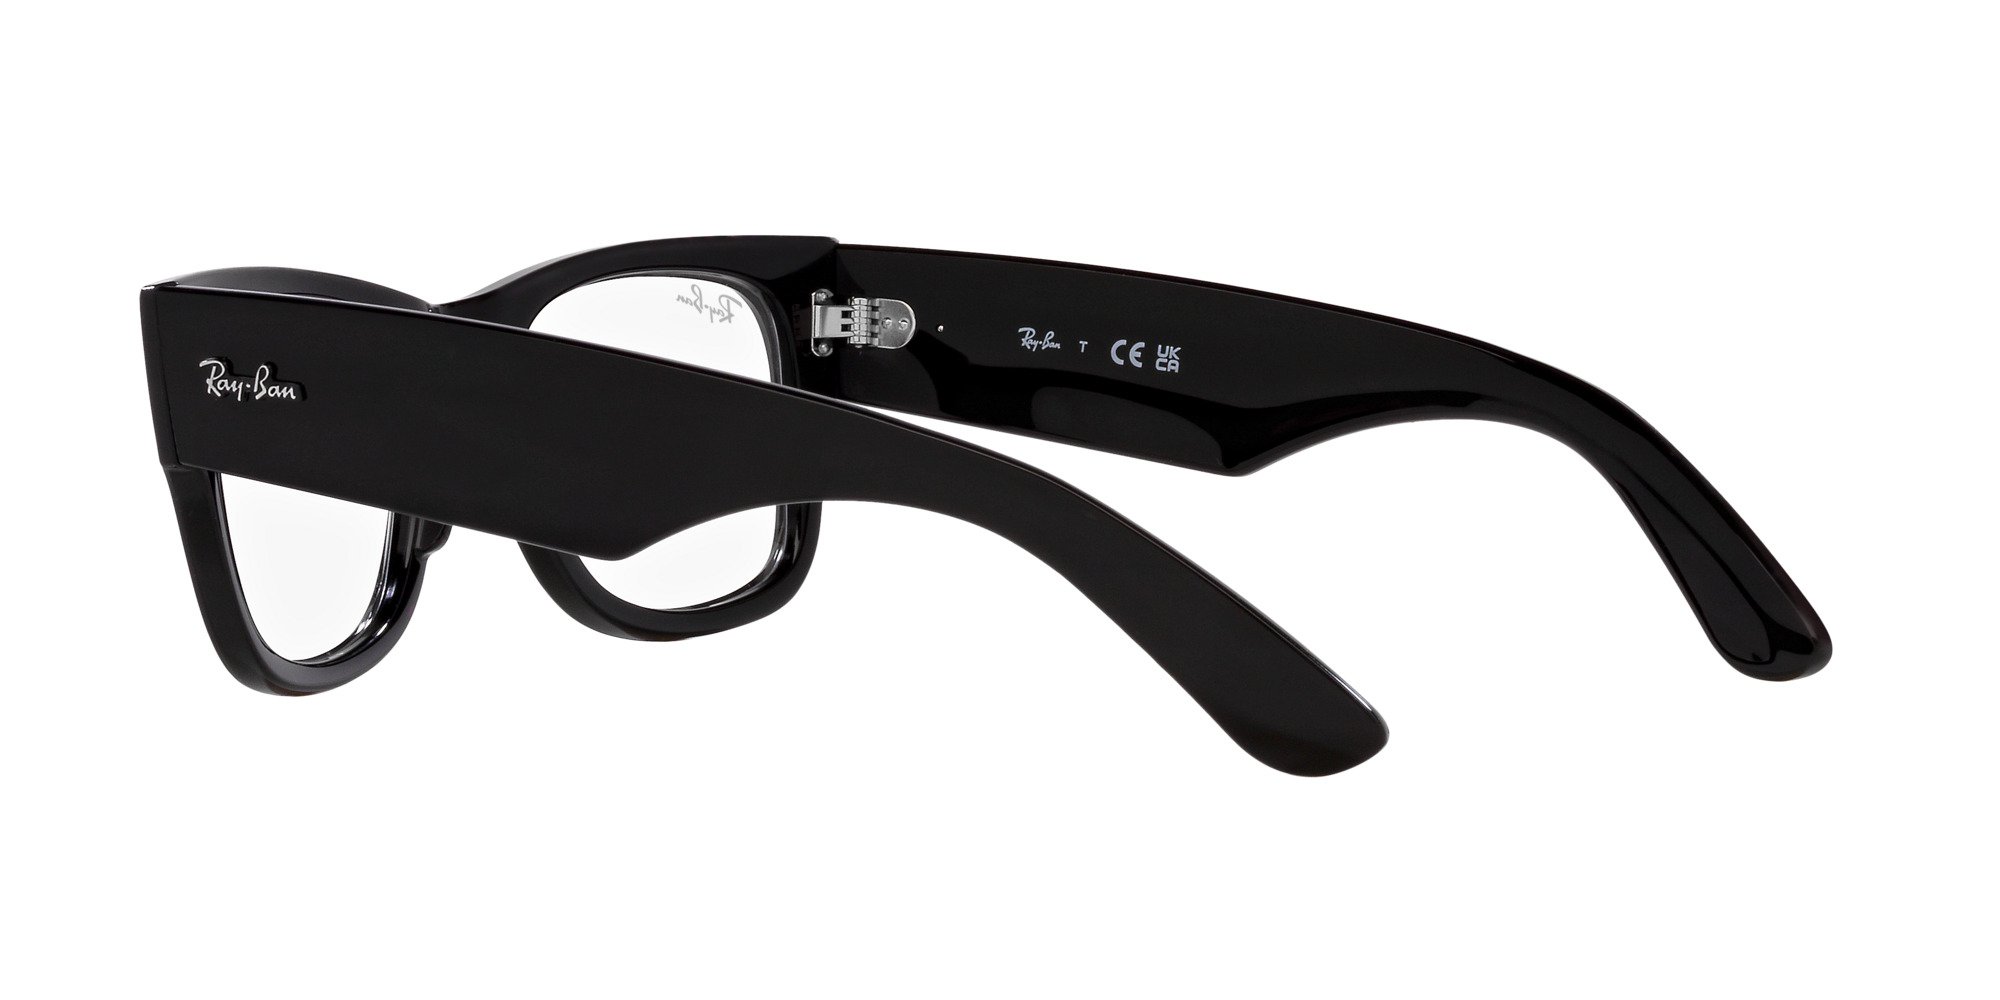 Das Bild zeigt die Korrektionsbrille RX0840V 2000 von der Marke Ray Ban in schwarz.